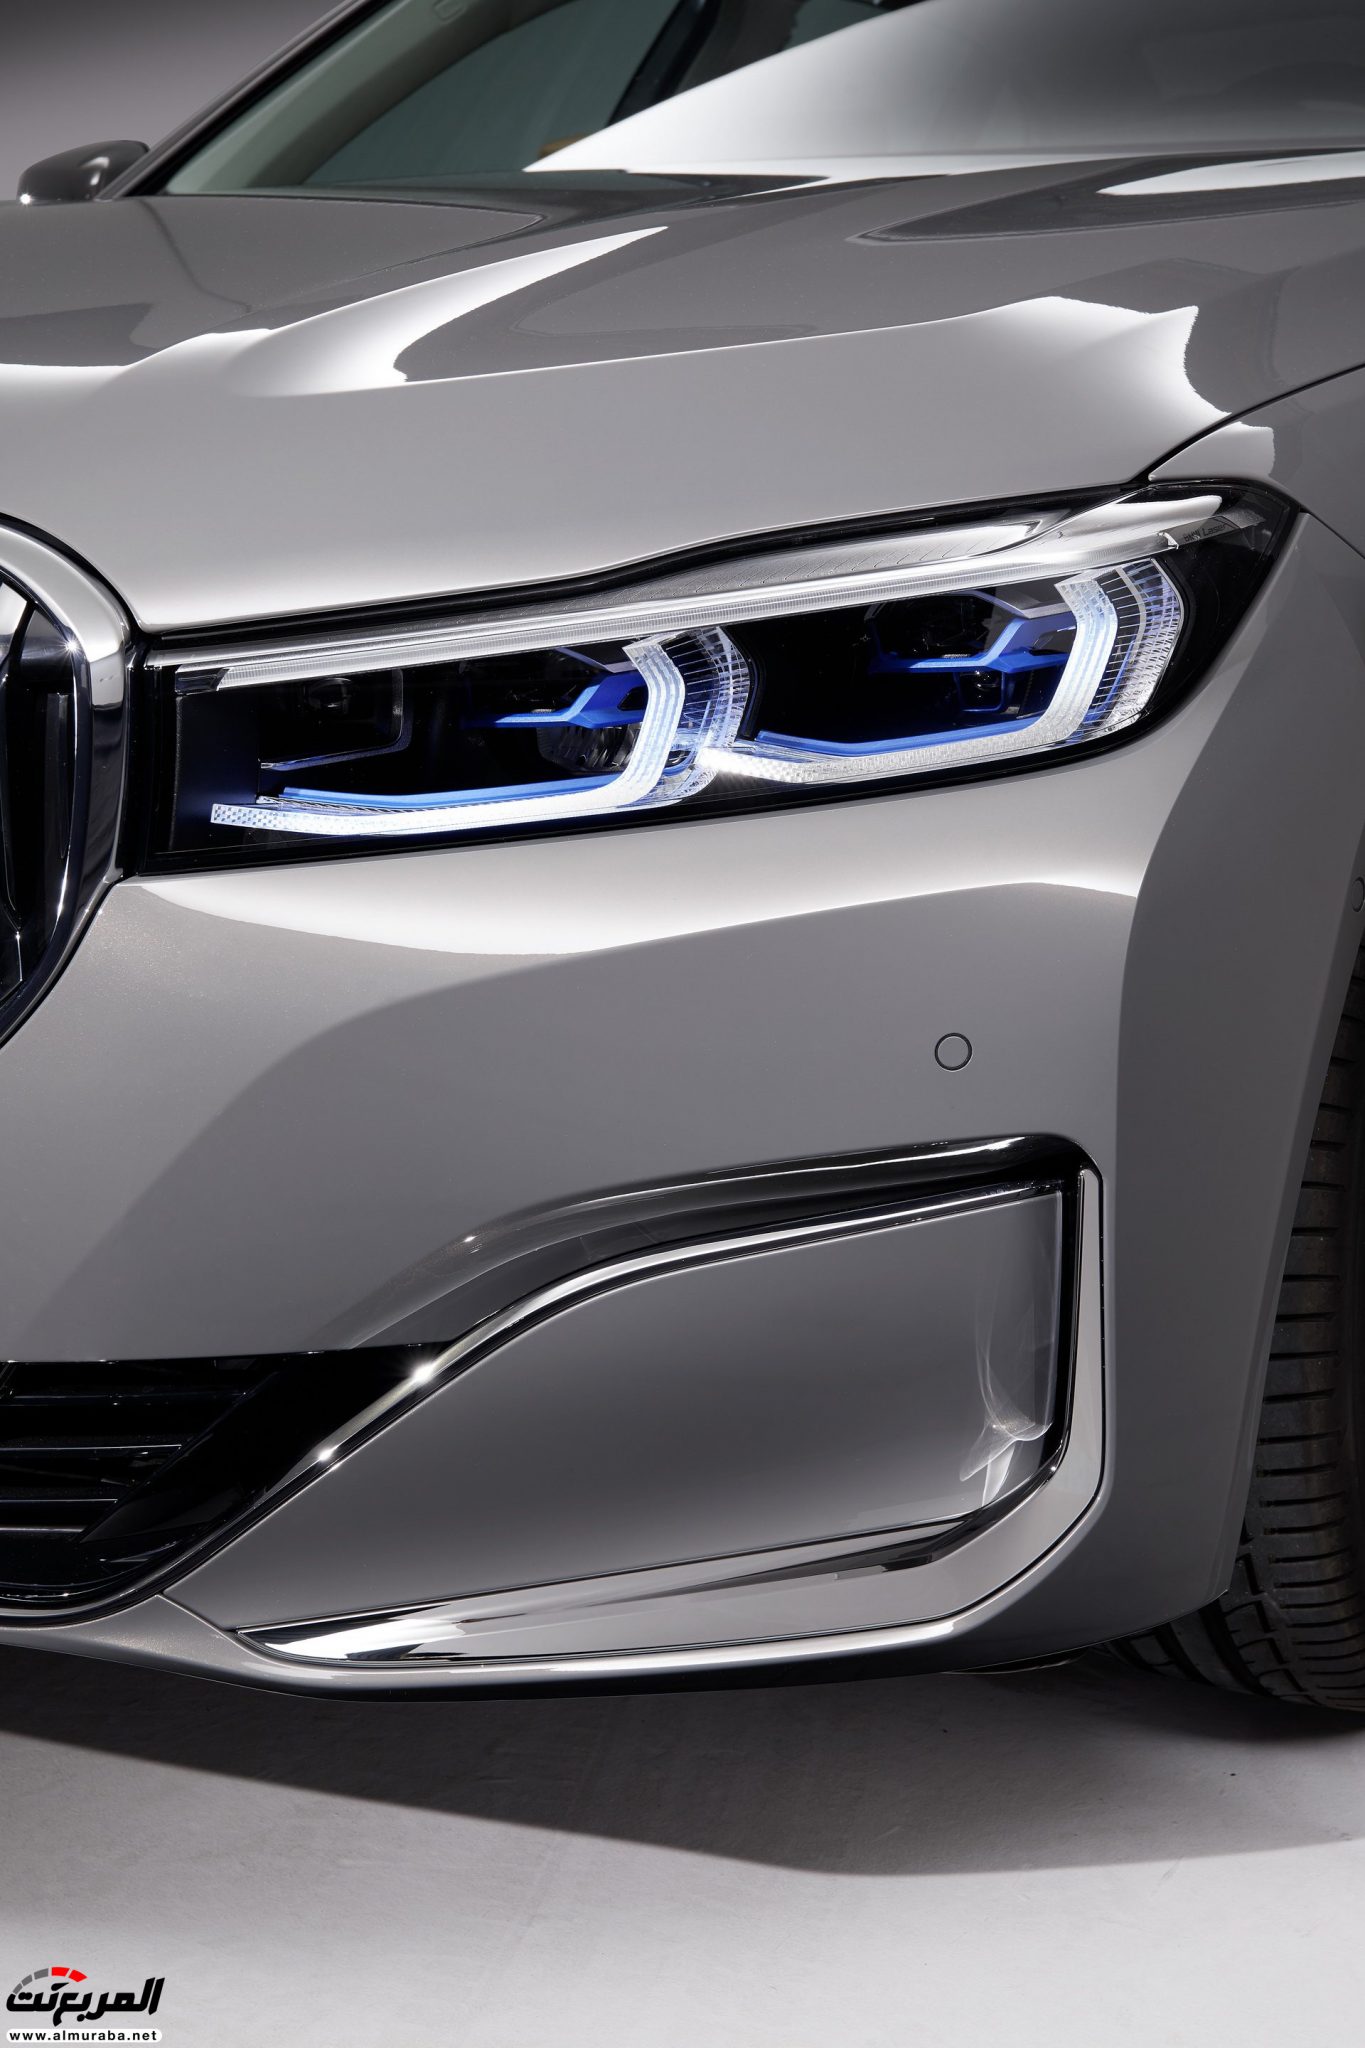 بي ام دبليو الفئة السابعة 2020 المحدثة تكشف نفسها رسمياً "صور ومواصفات" BMW 7 Series 227